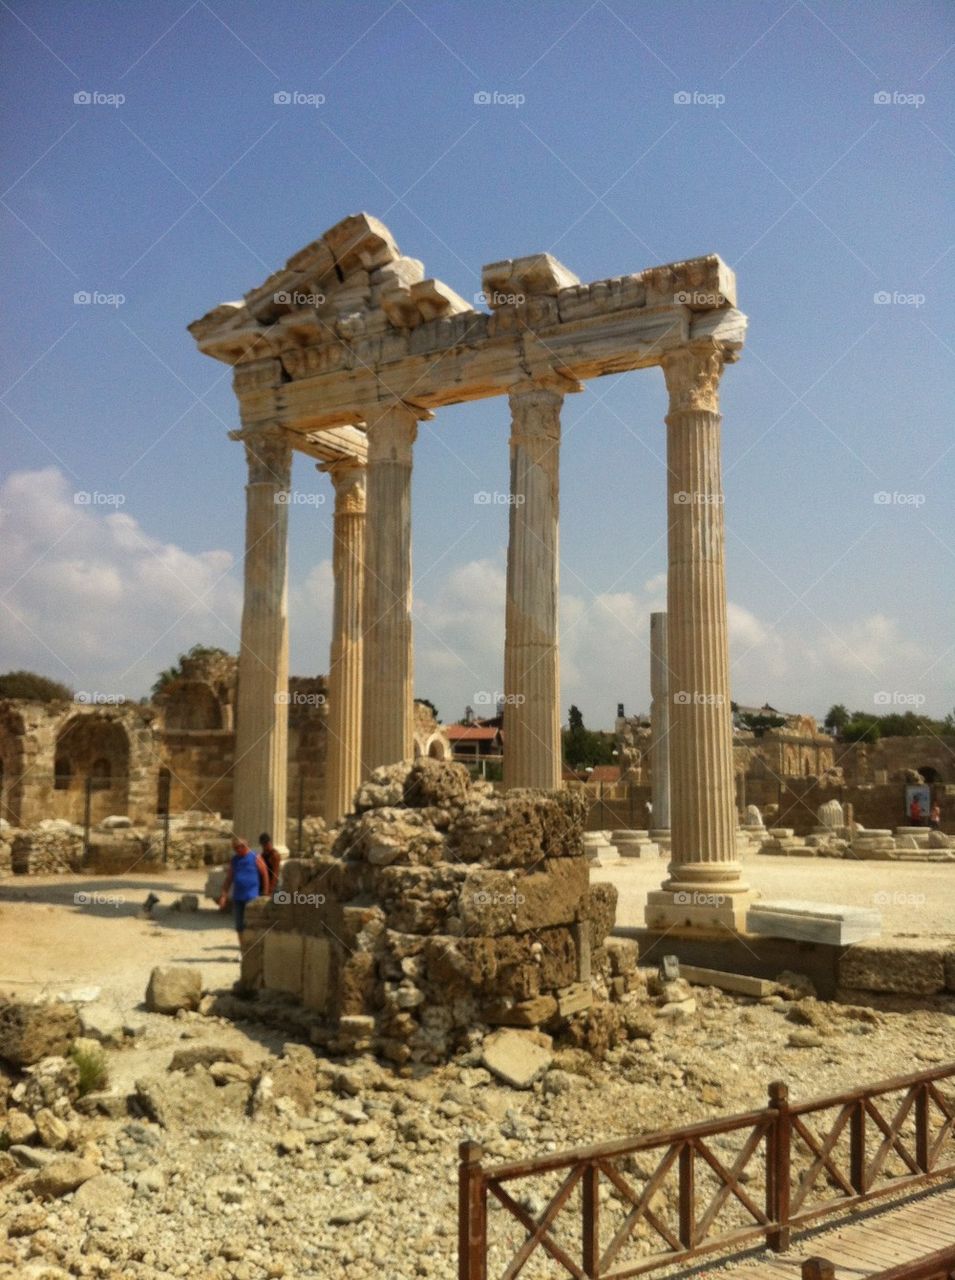 The temple of Apollon 2